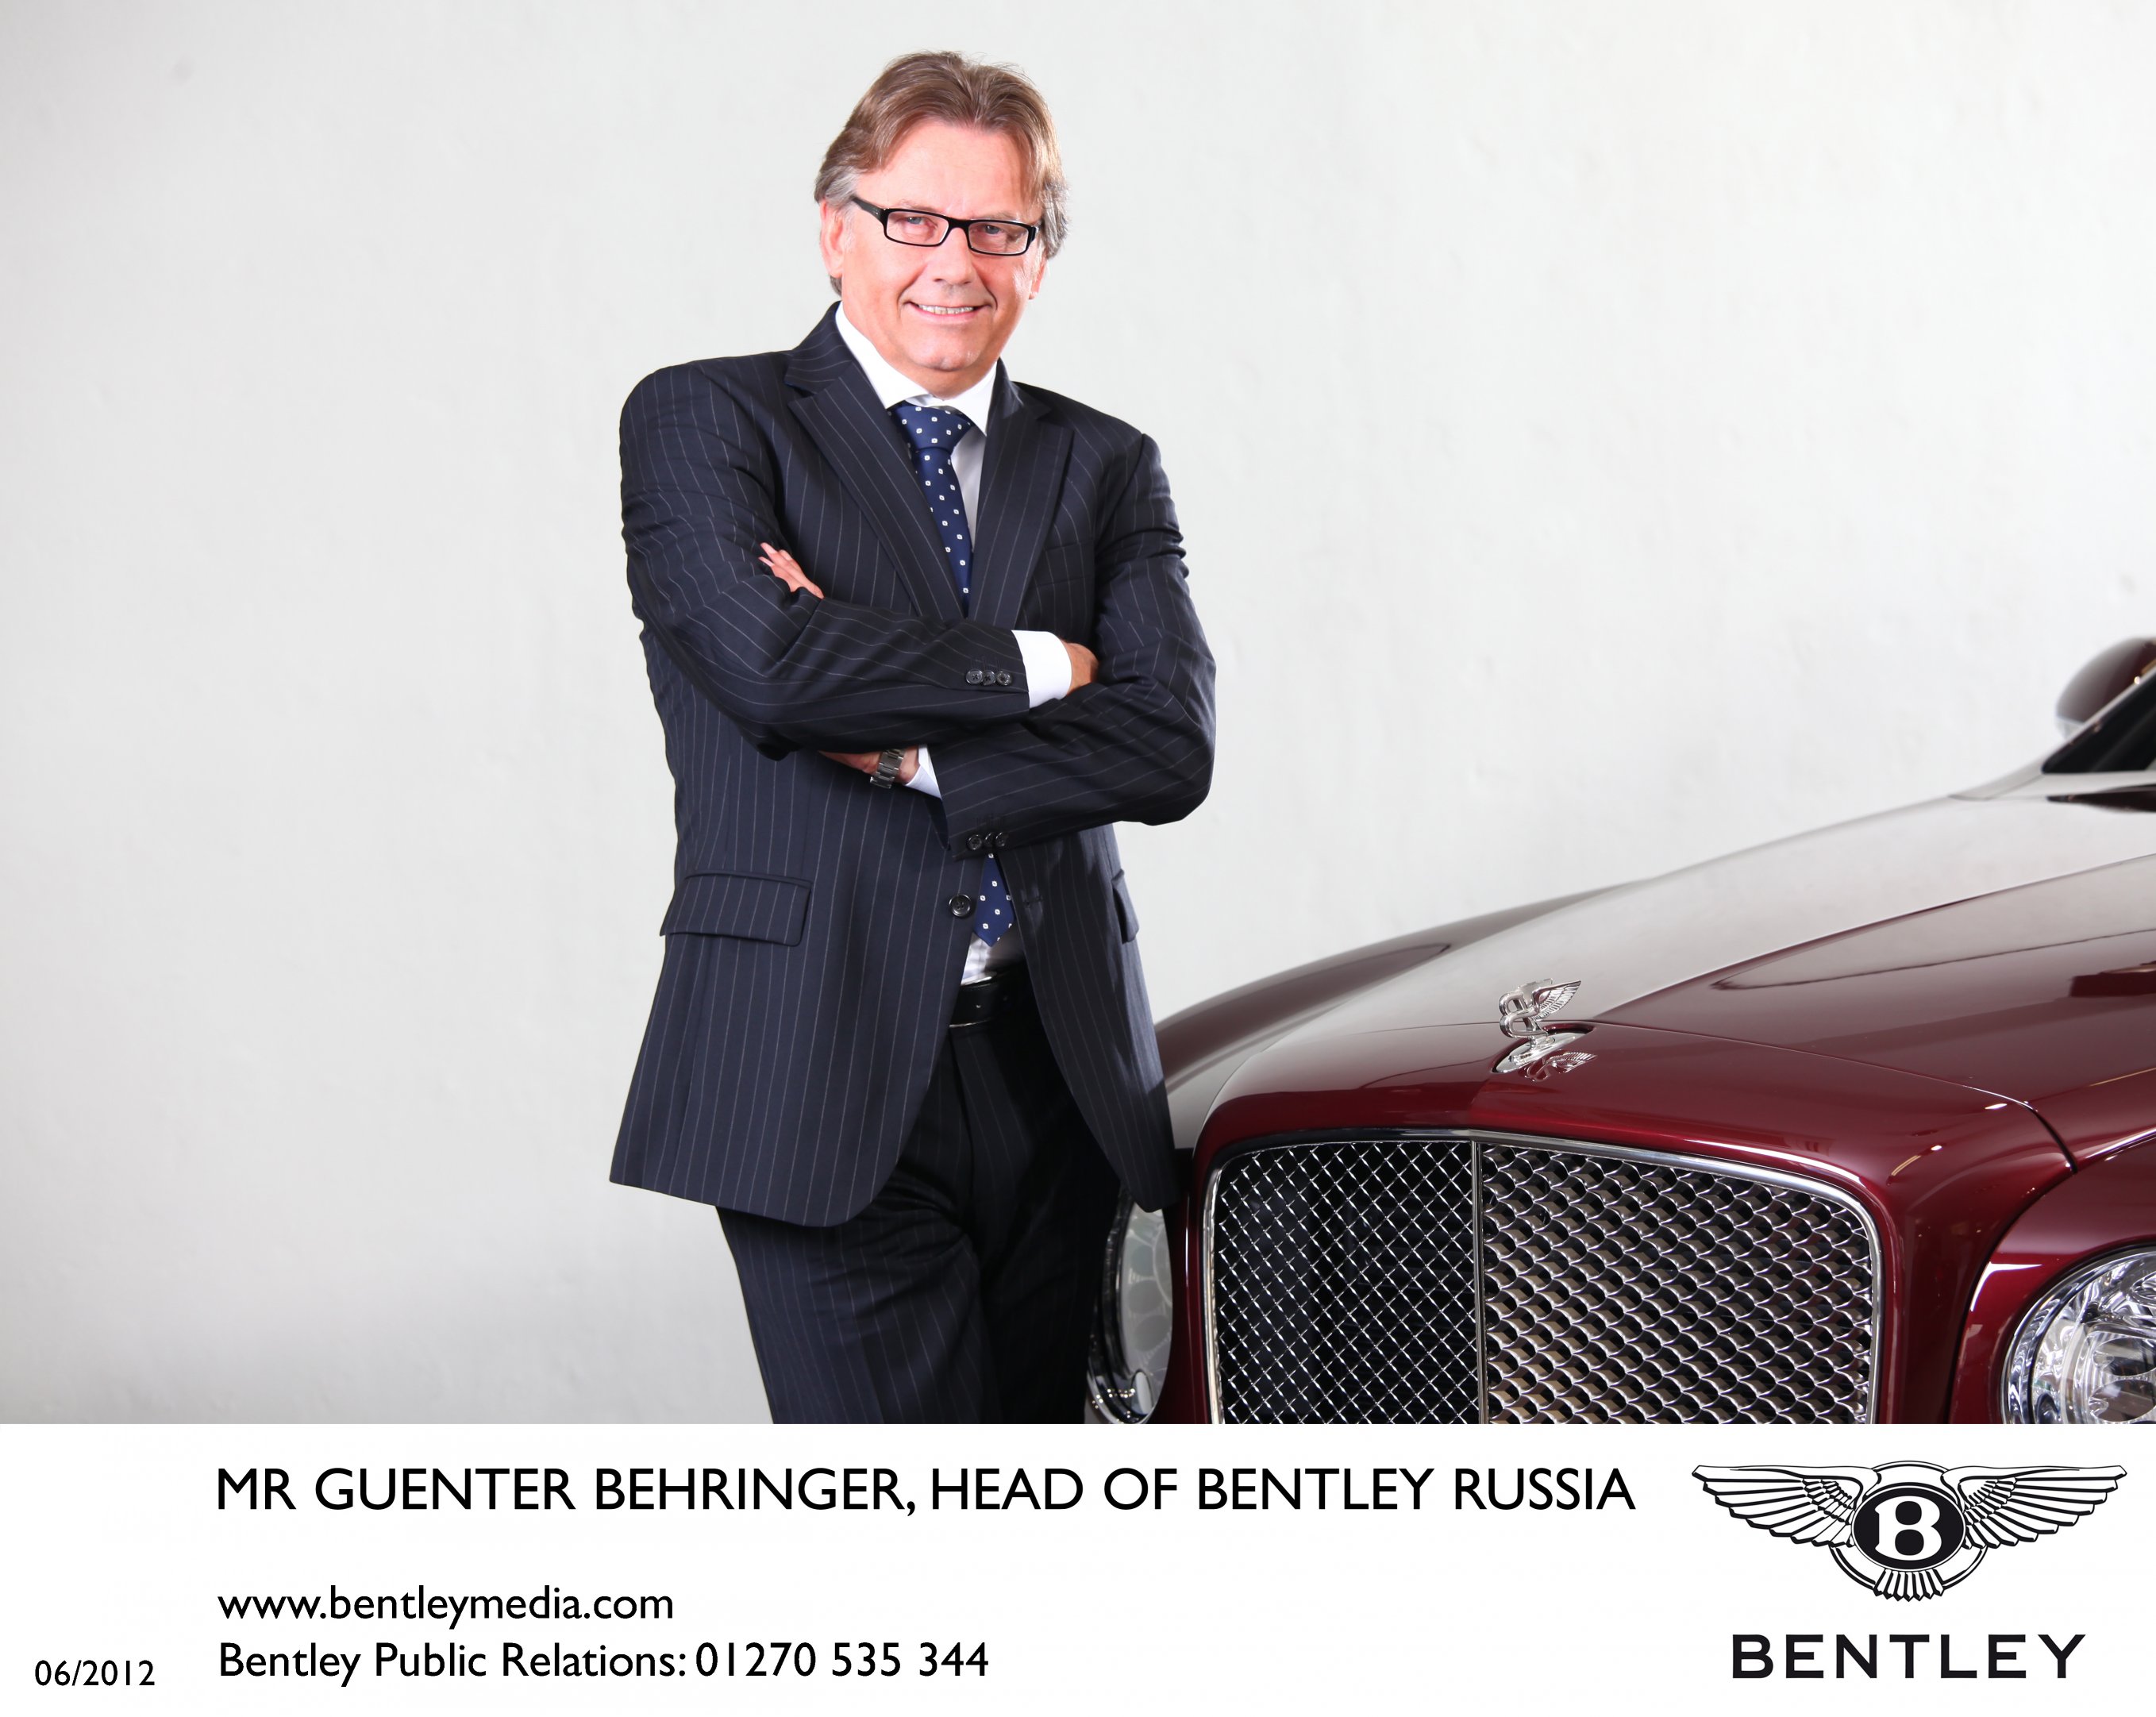 Bentley Russia